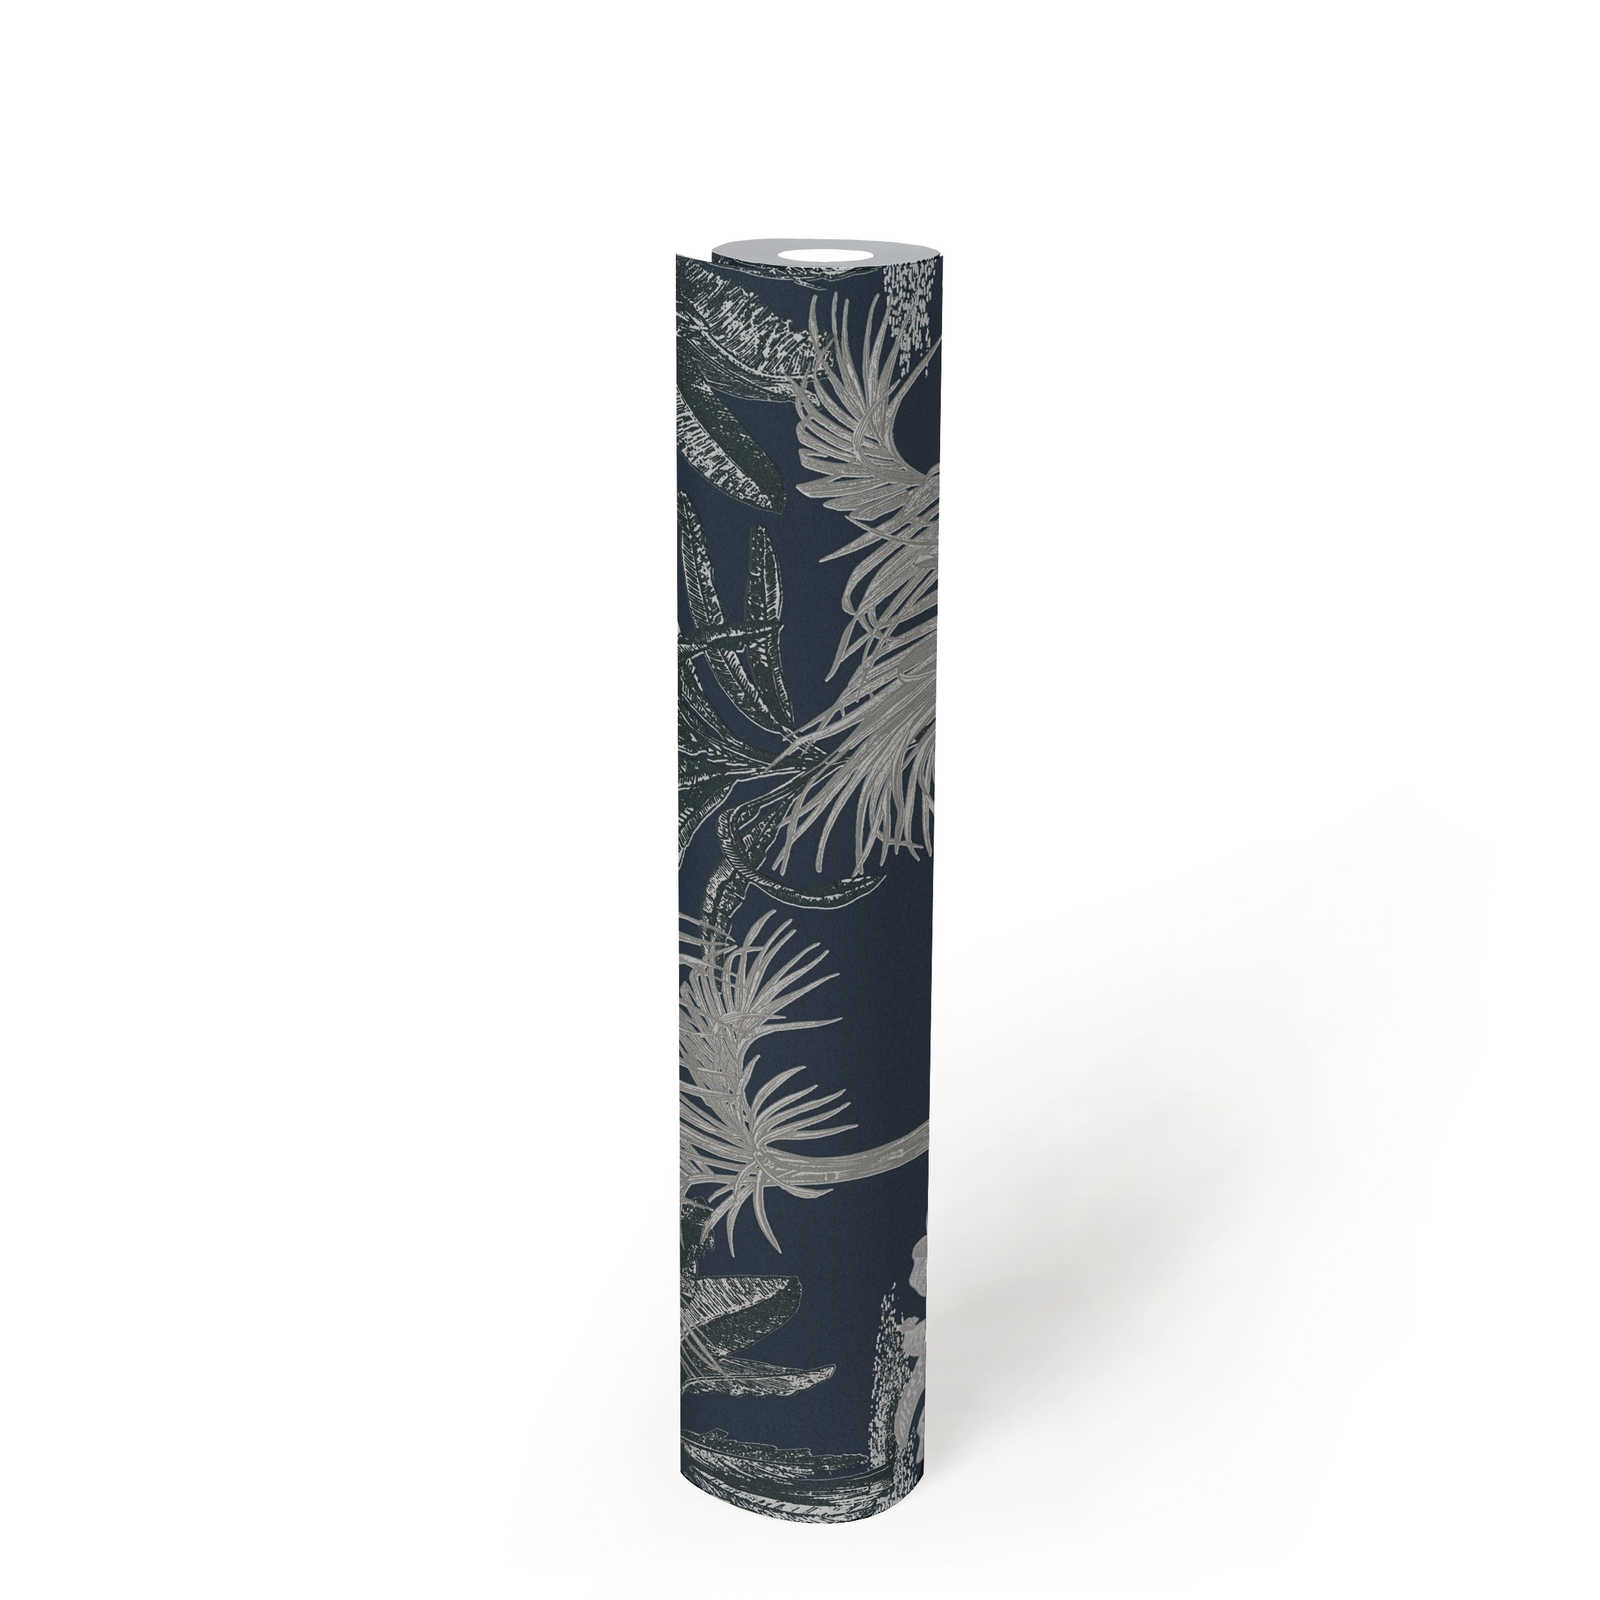             Papier peint palmier MICHASLKY bleu foncé avec motifs structurés - bleu, gris
        